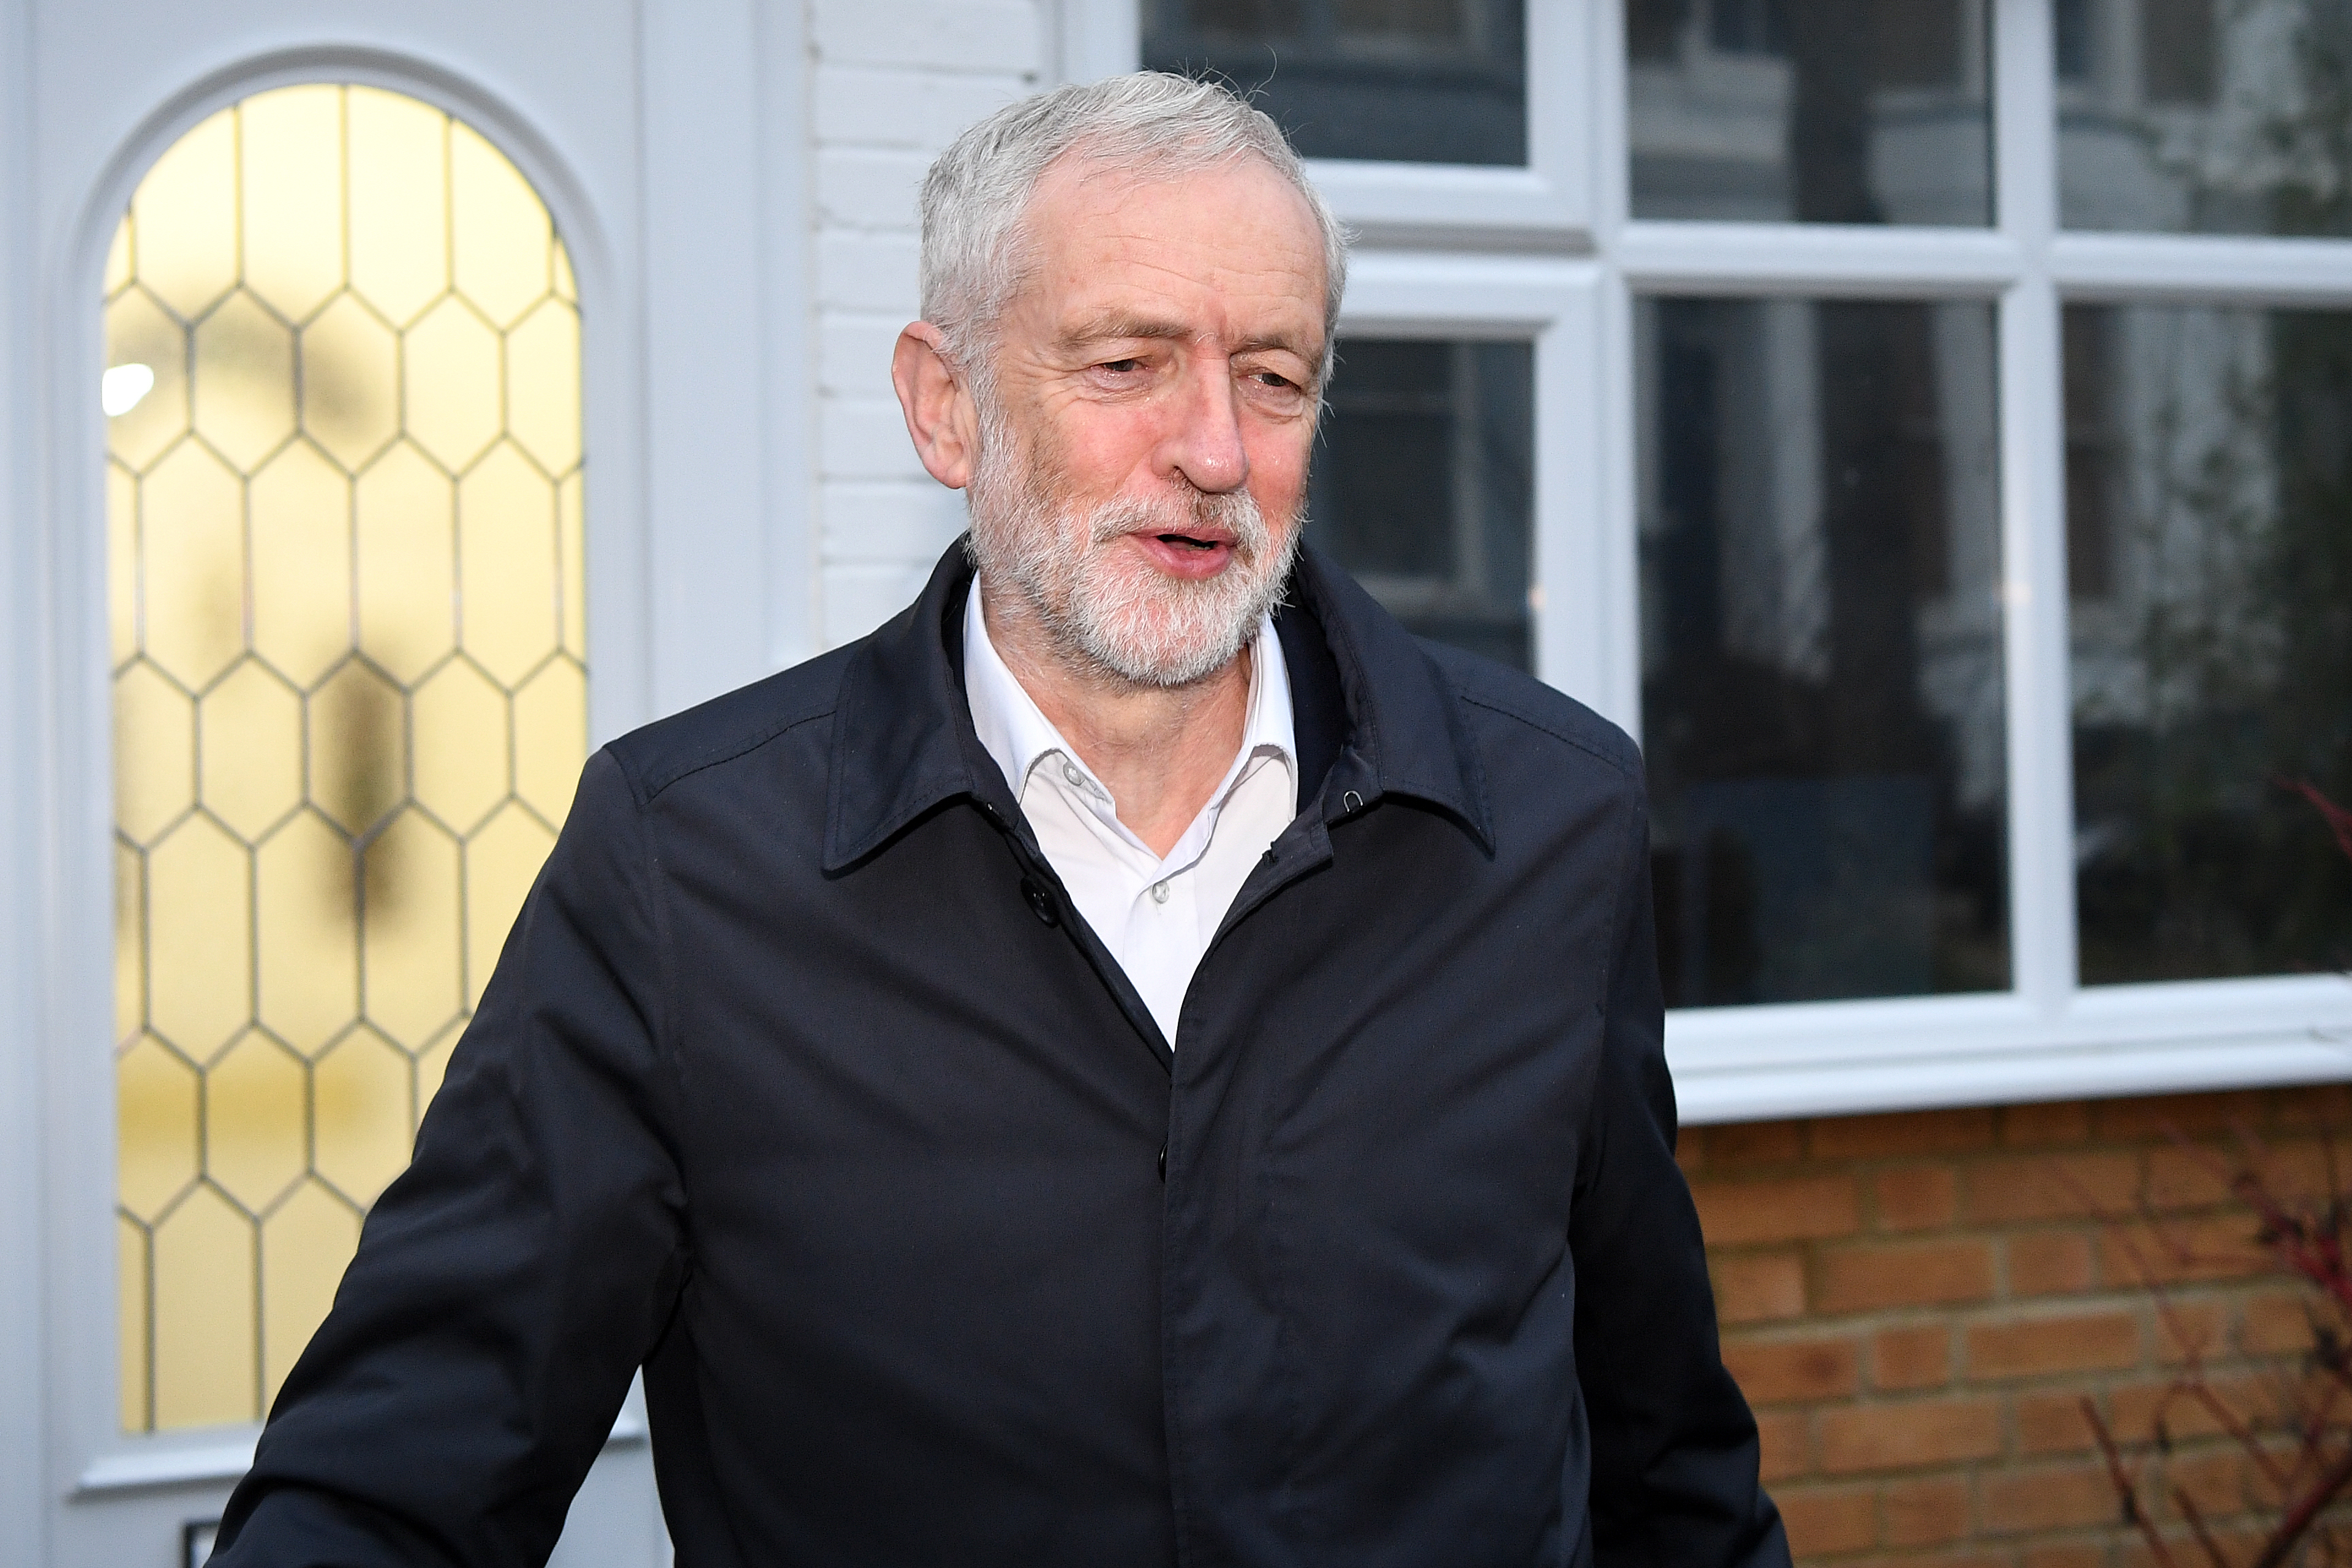 El líder laborista Jeremy Corbyn saliendo de su casa antes de la votación sobre la moción de censura a Theresa May. Crédito: Neal / Getty Images